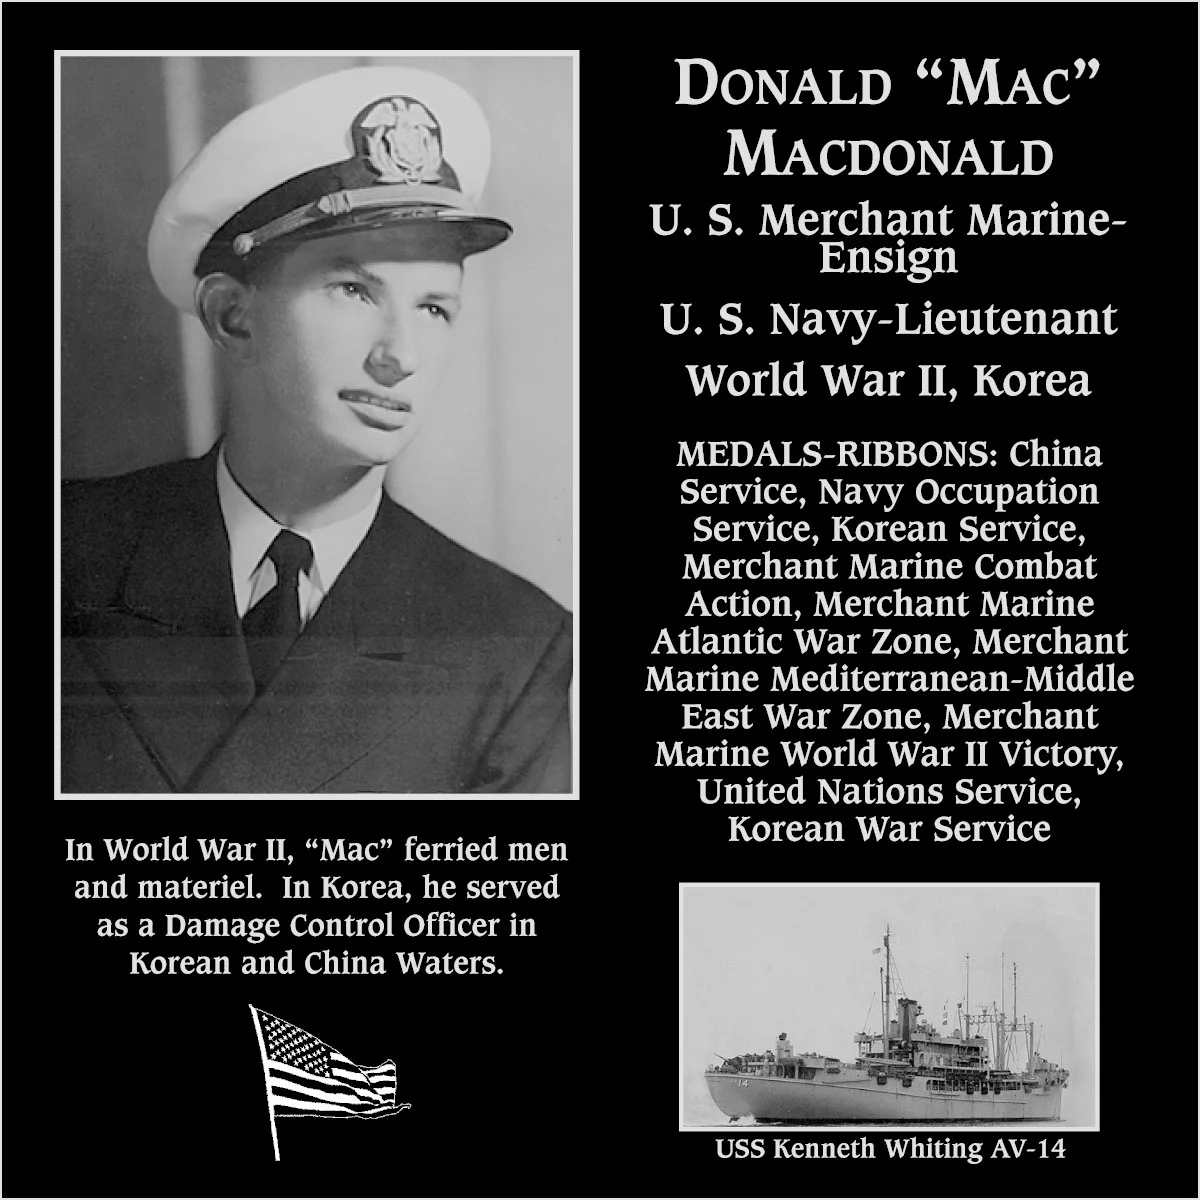 Donald “Mac” MacDonald